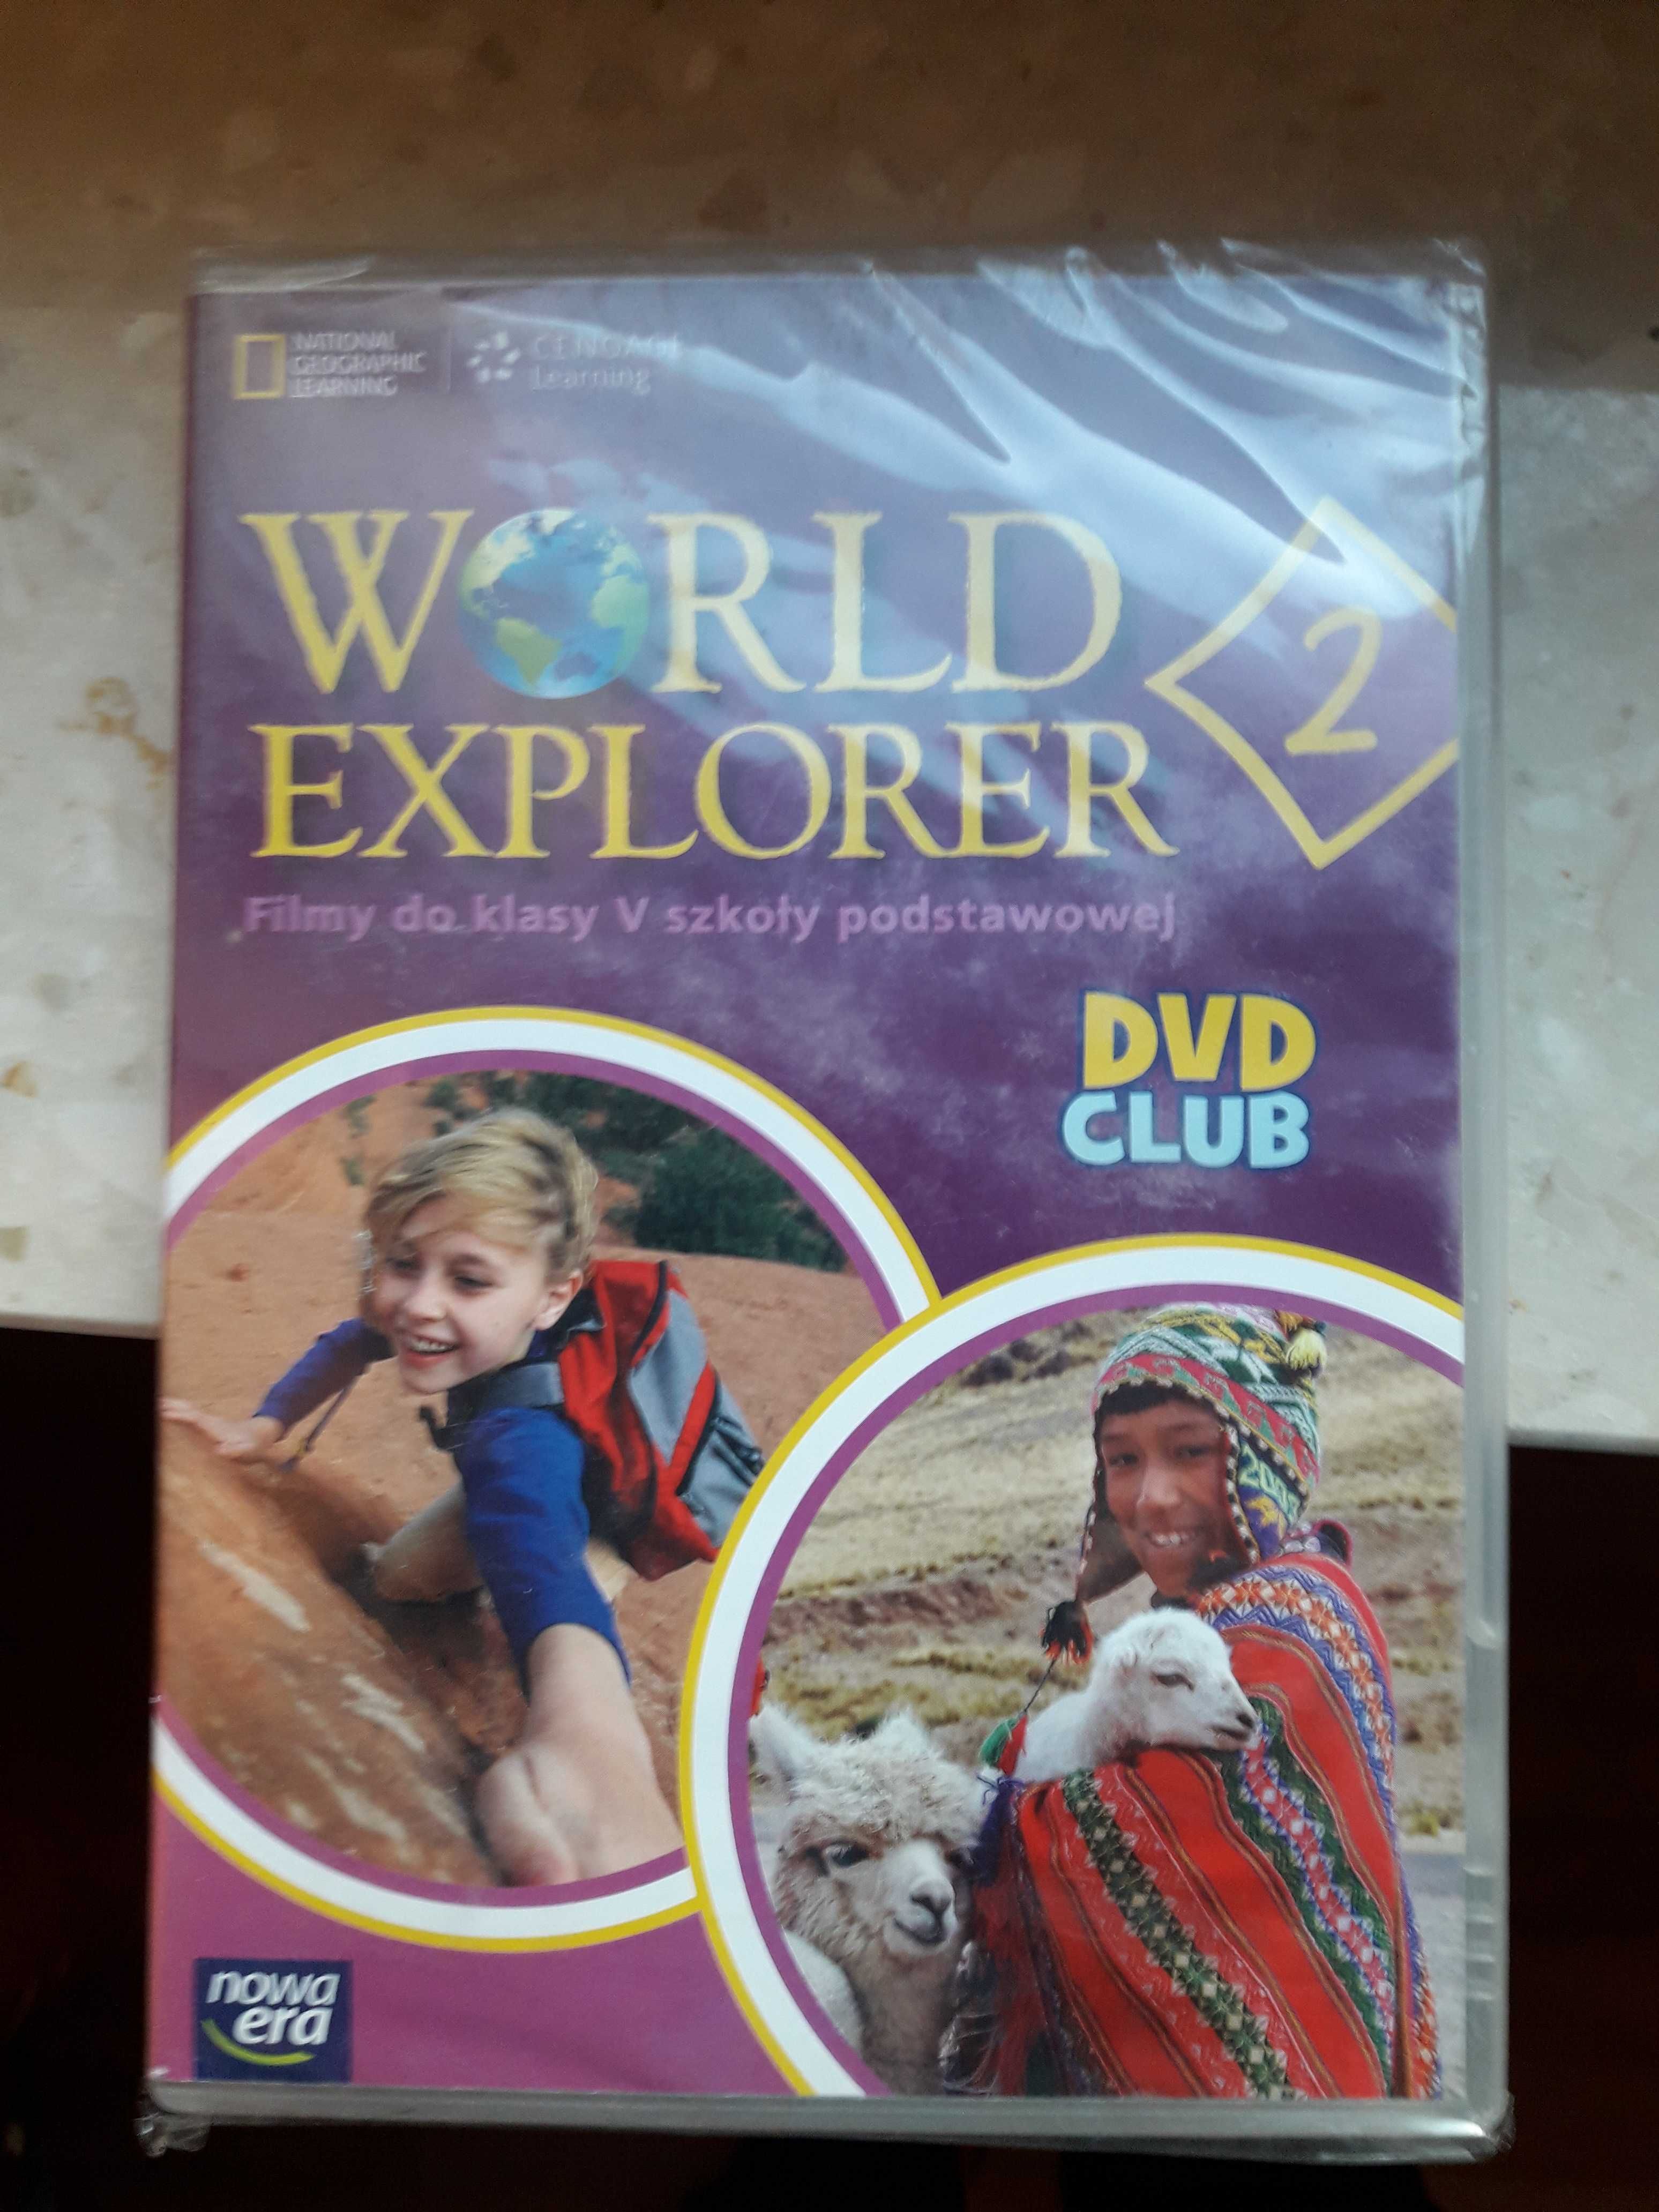 My World , WORLD Explorer plyty Nowa Era